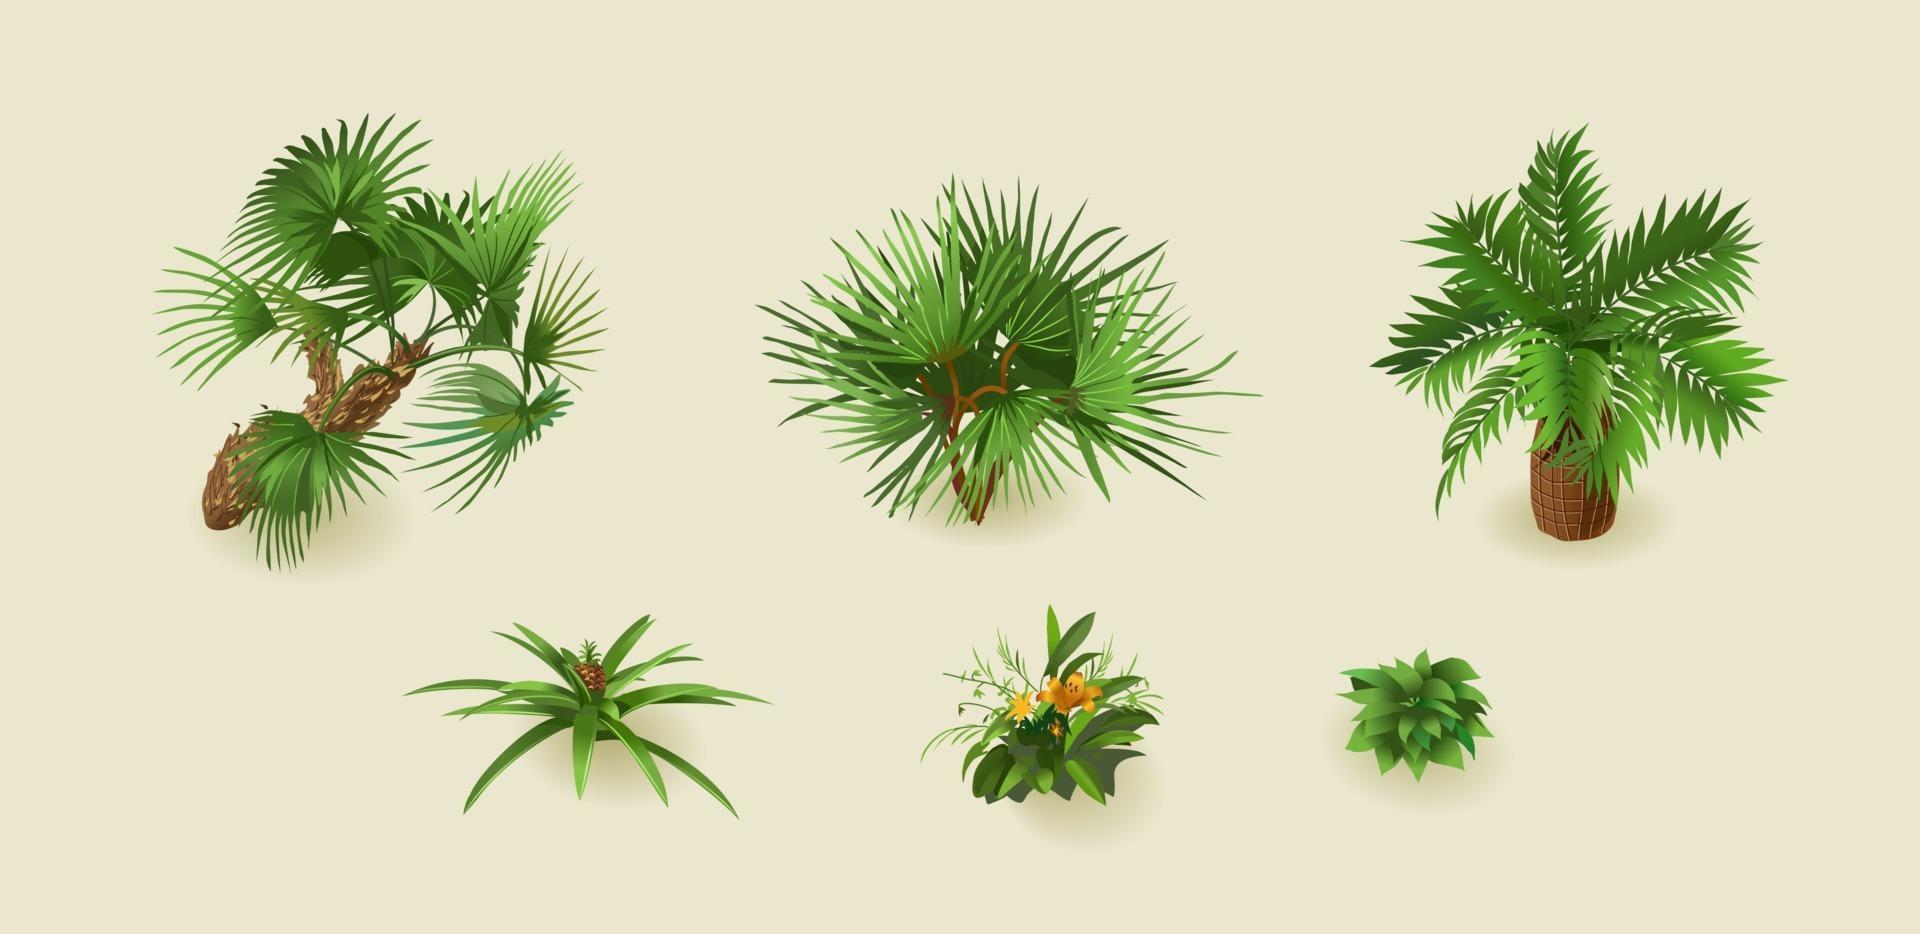 plantes de palmiers tropicaux sur fond clair pour la décoration intérieure en isométrique. illustration vectorielle vecteur